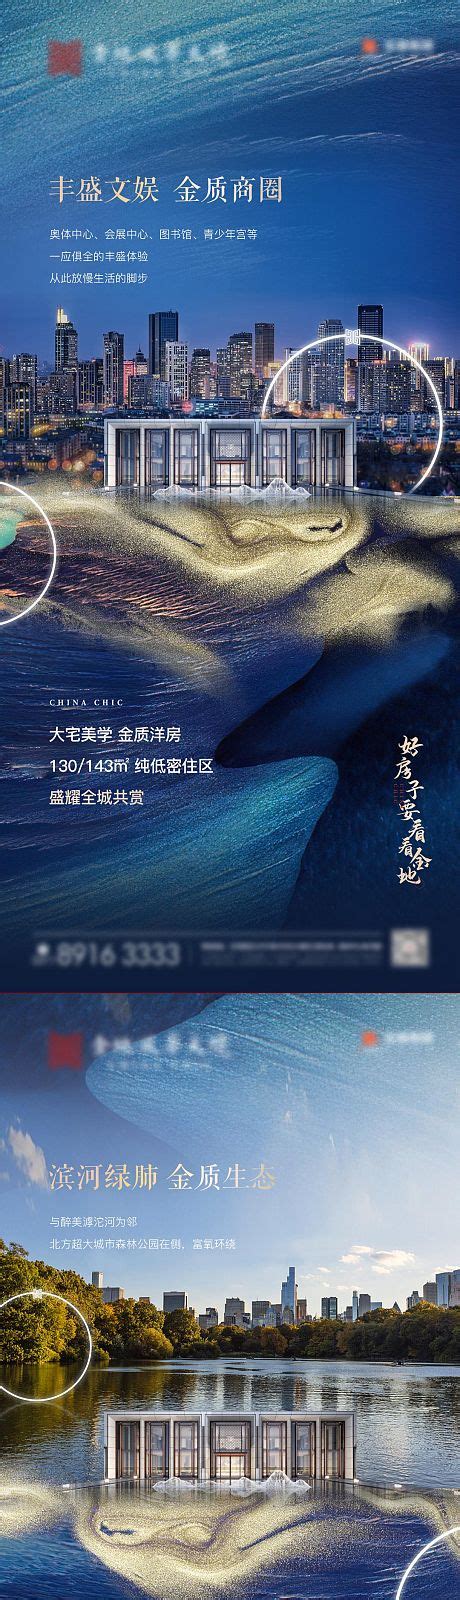 江景水岸房地产移动端海报PSD广告设计素材海报模板免费下载-享设计